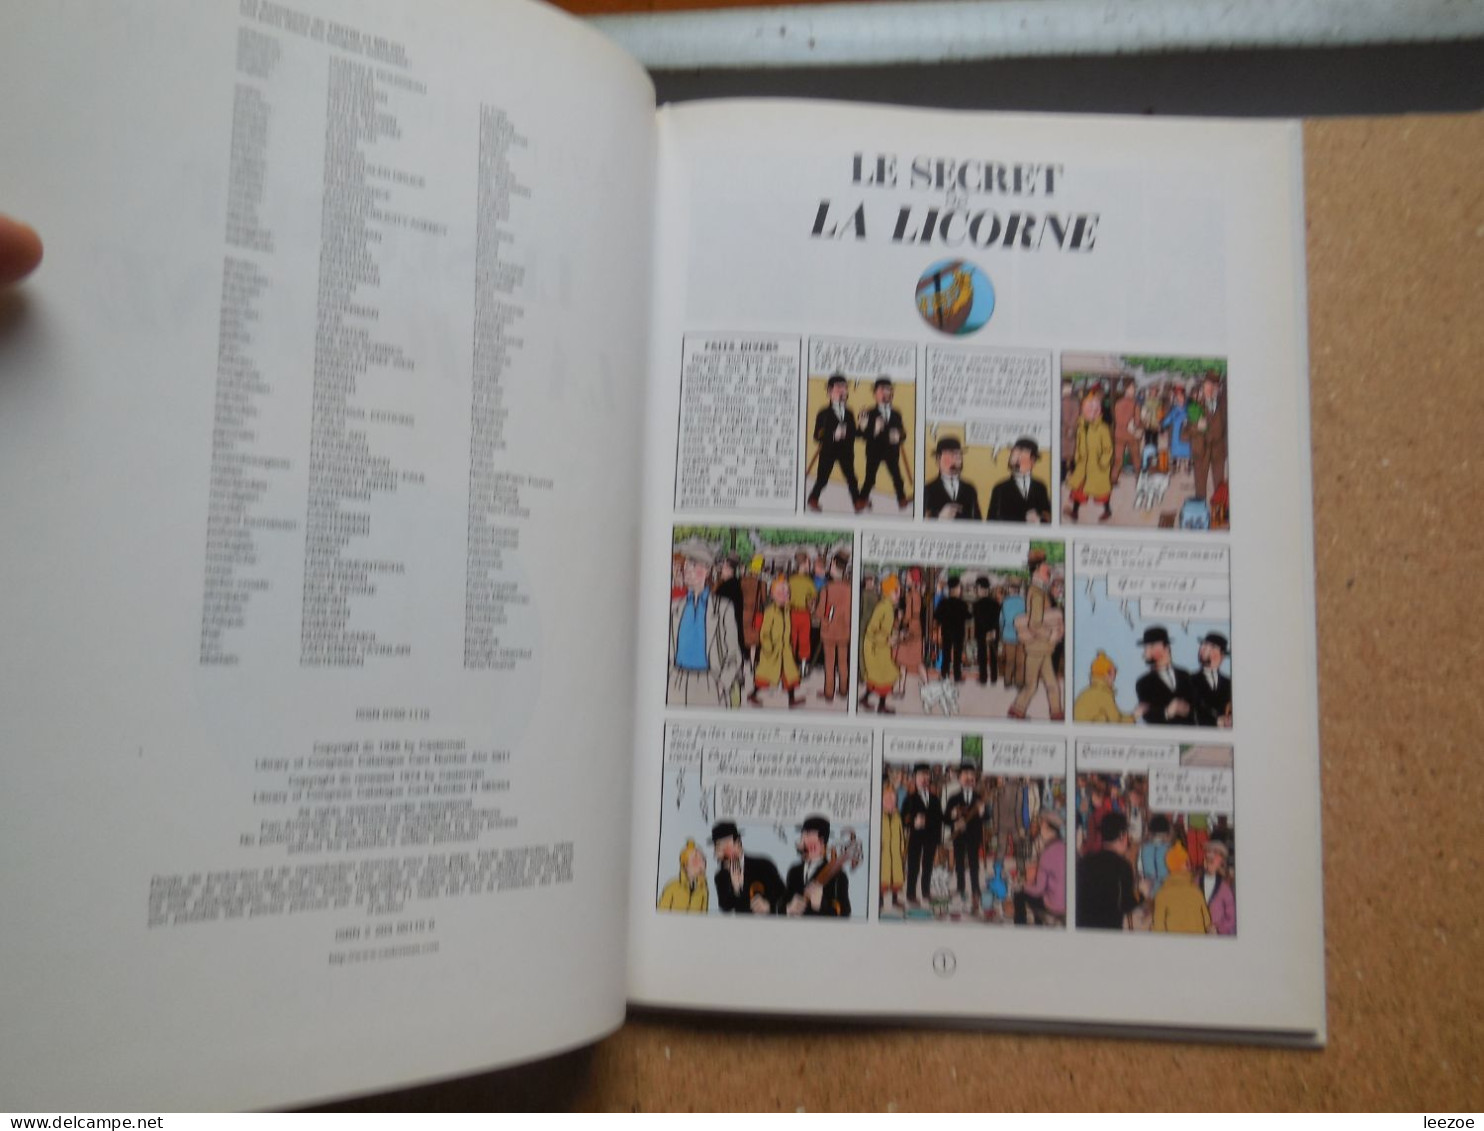 BD Tintin 11D? LE SECRET DE LA LICORNE, Dépôt Légal : 4è Trimestre 1954; D. 1979/0053/12.......N5 - Tintin